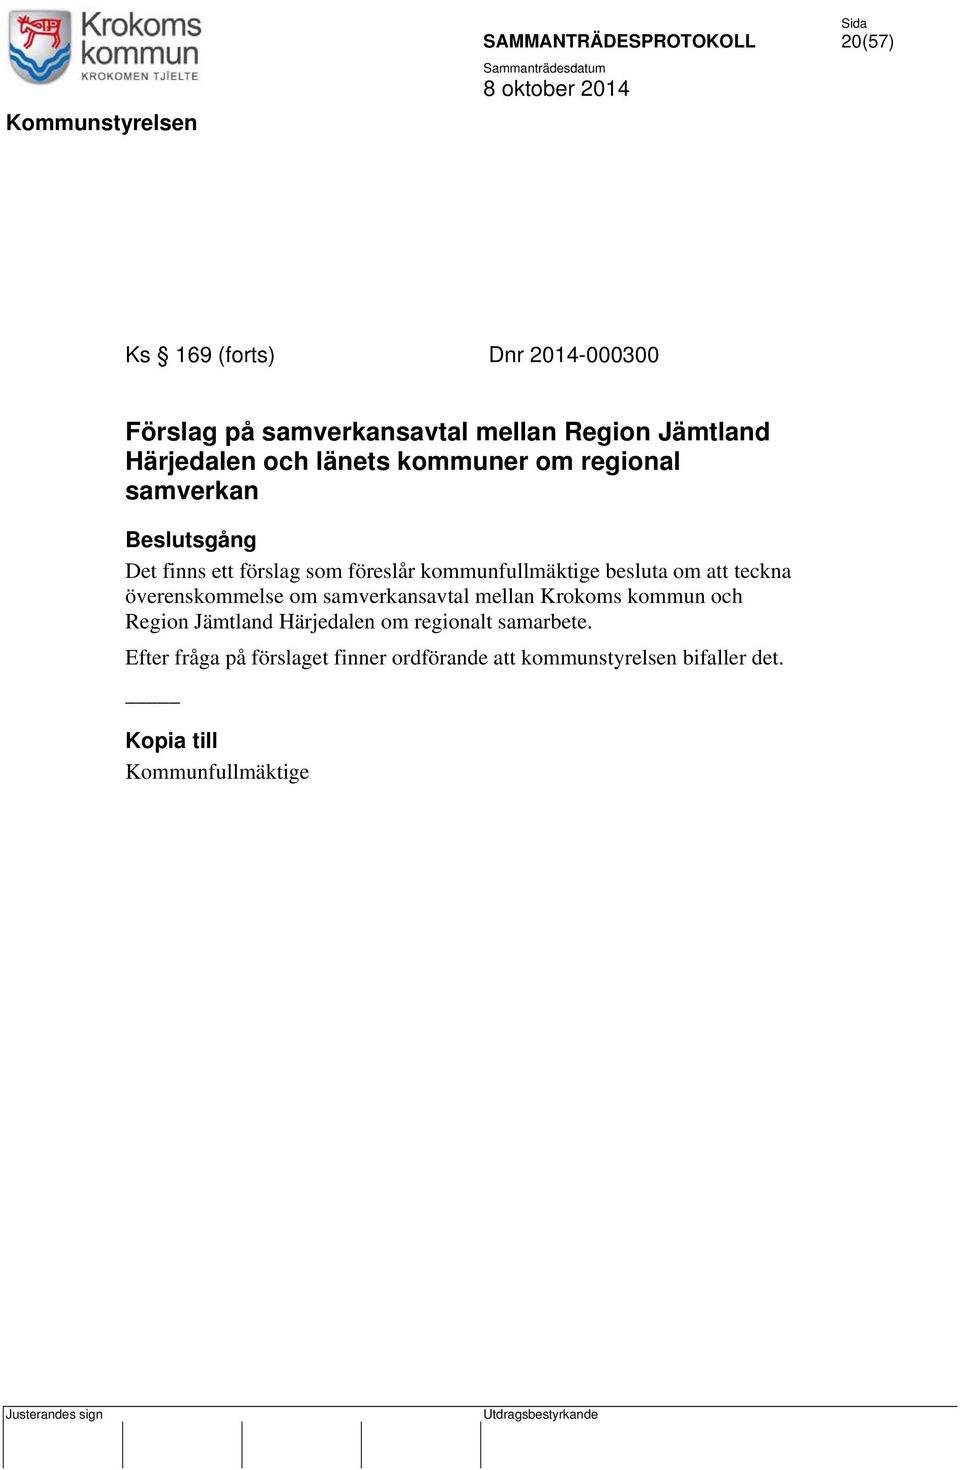 teckna överenskommelse om samverkansavtal mellan Krokoms kommun och Region Jämtland Härjedalen om regionalt